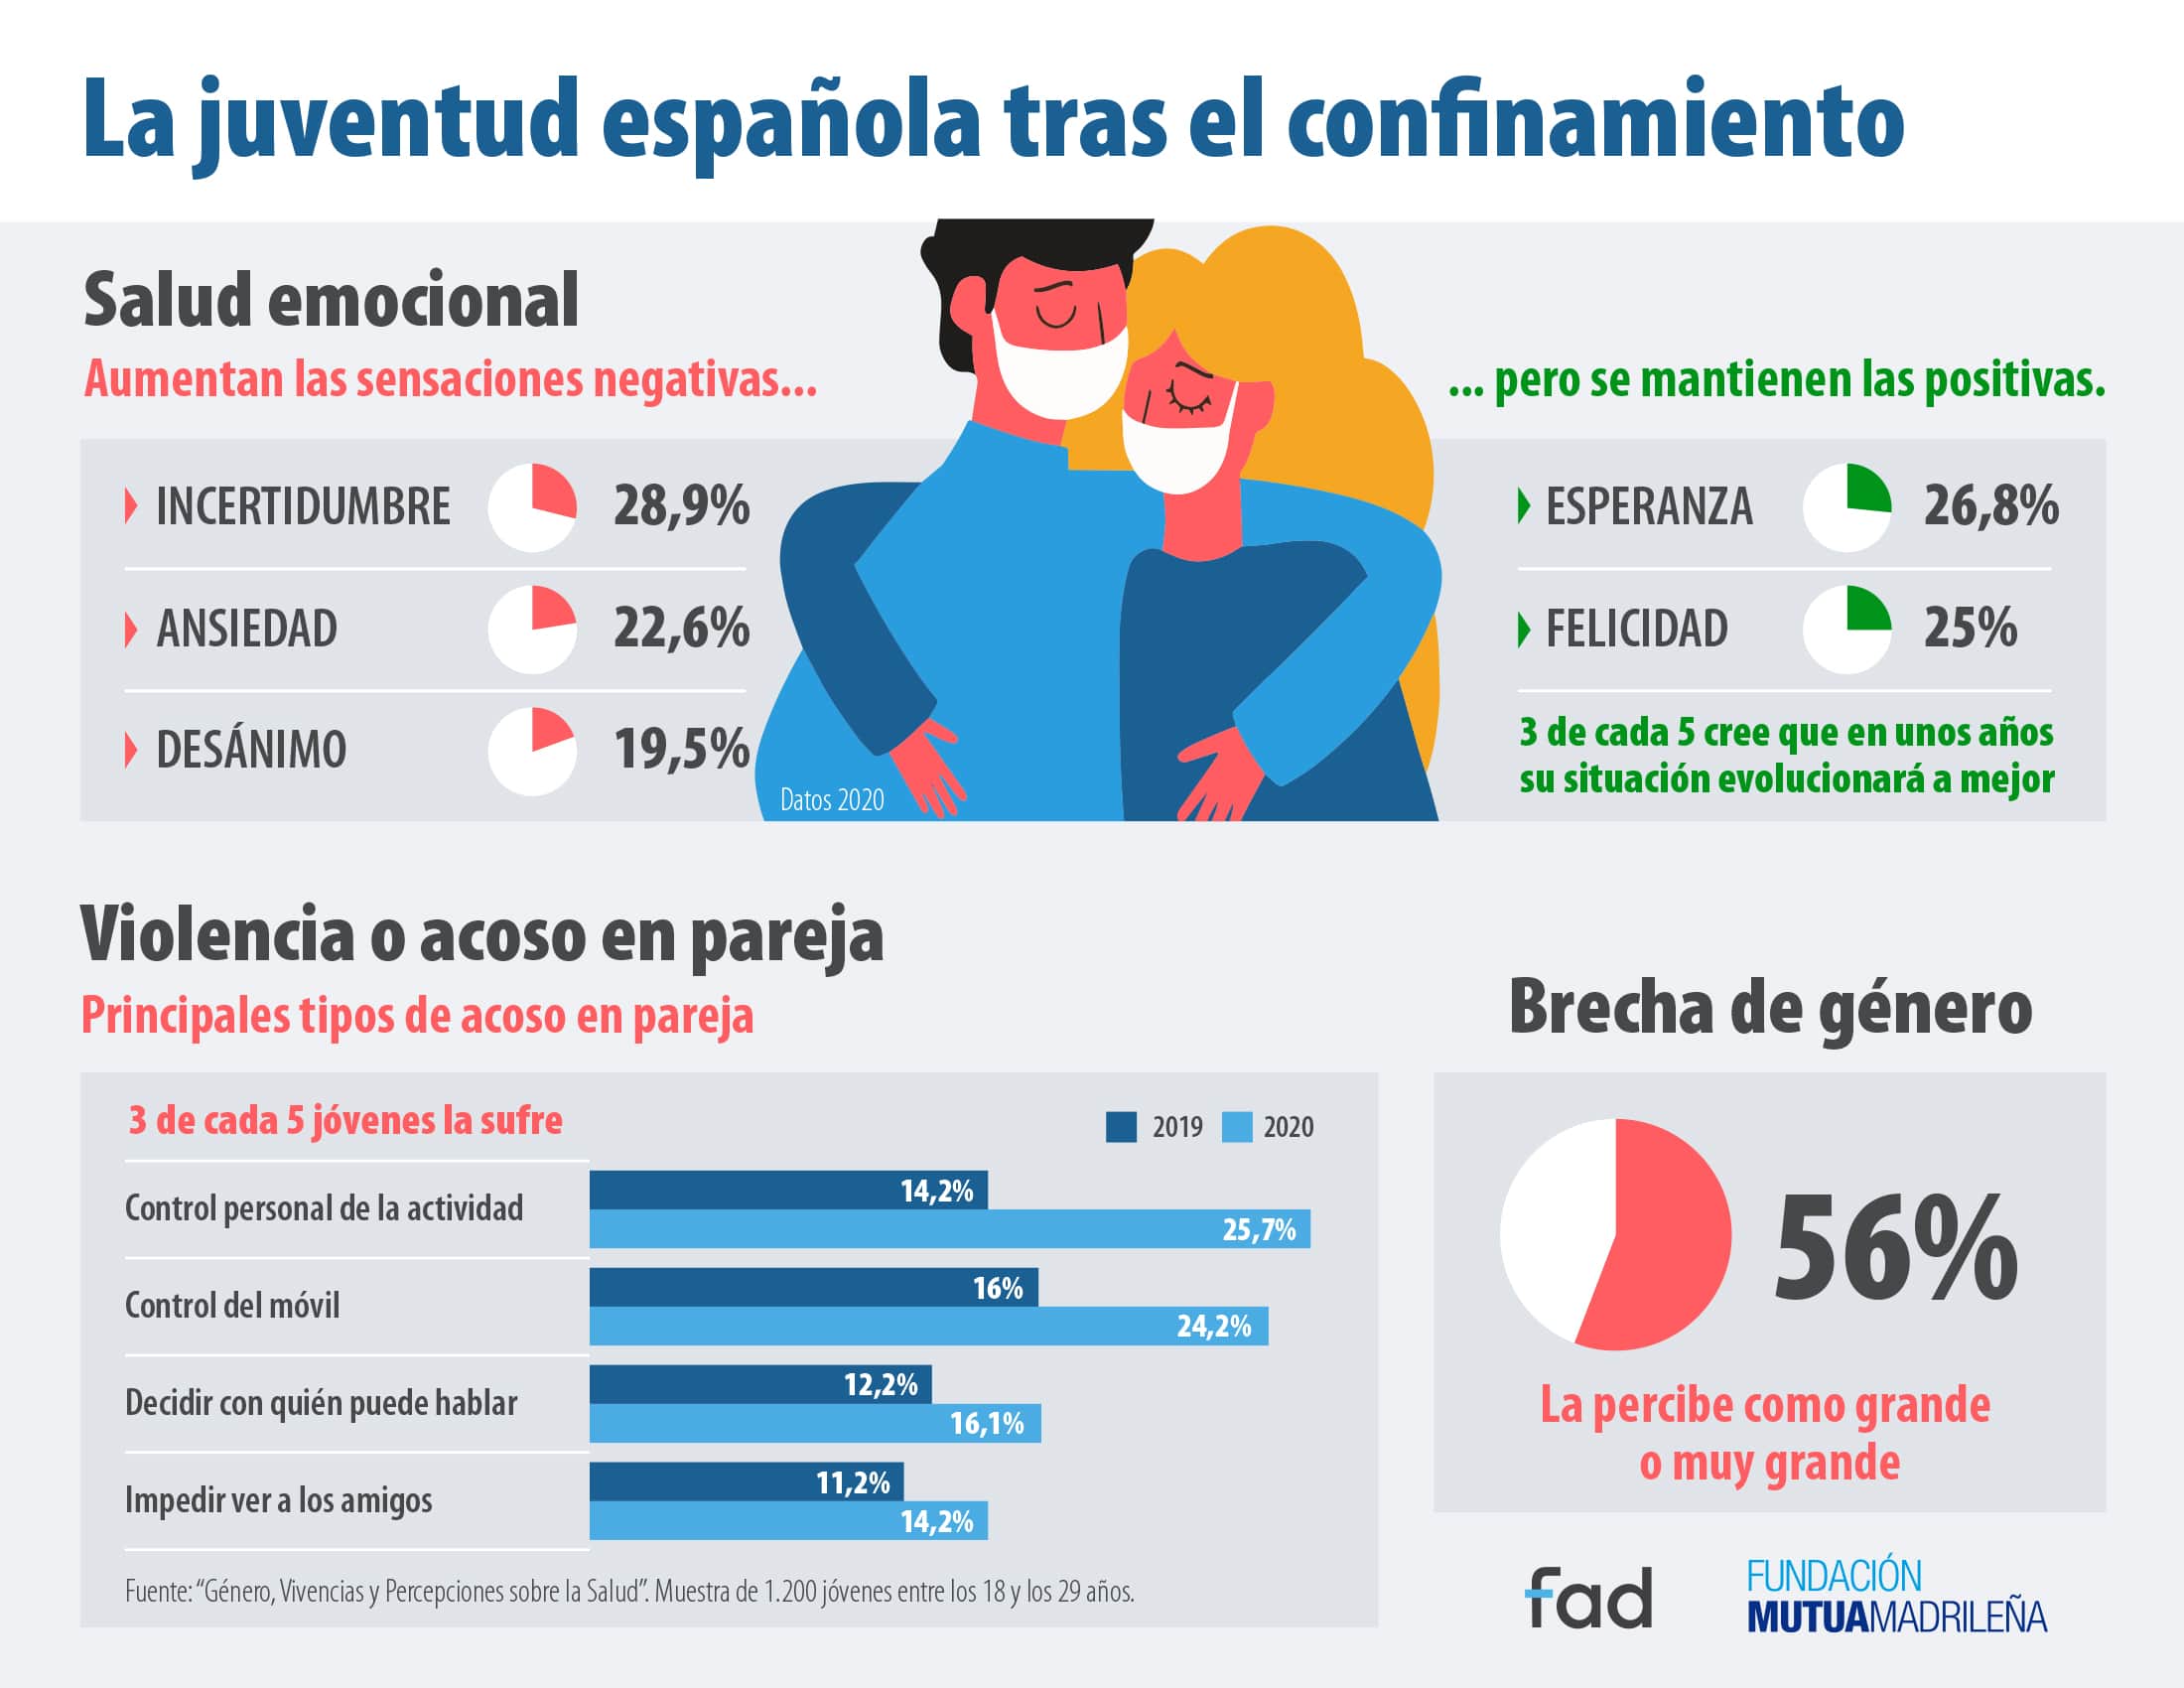 Más de la mitad de la juventud española percibe grandes desigualdades de género